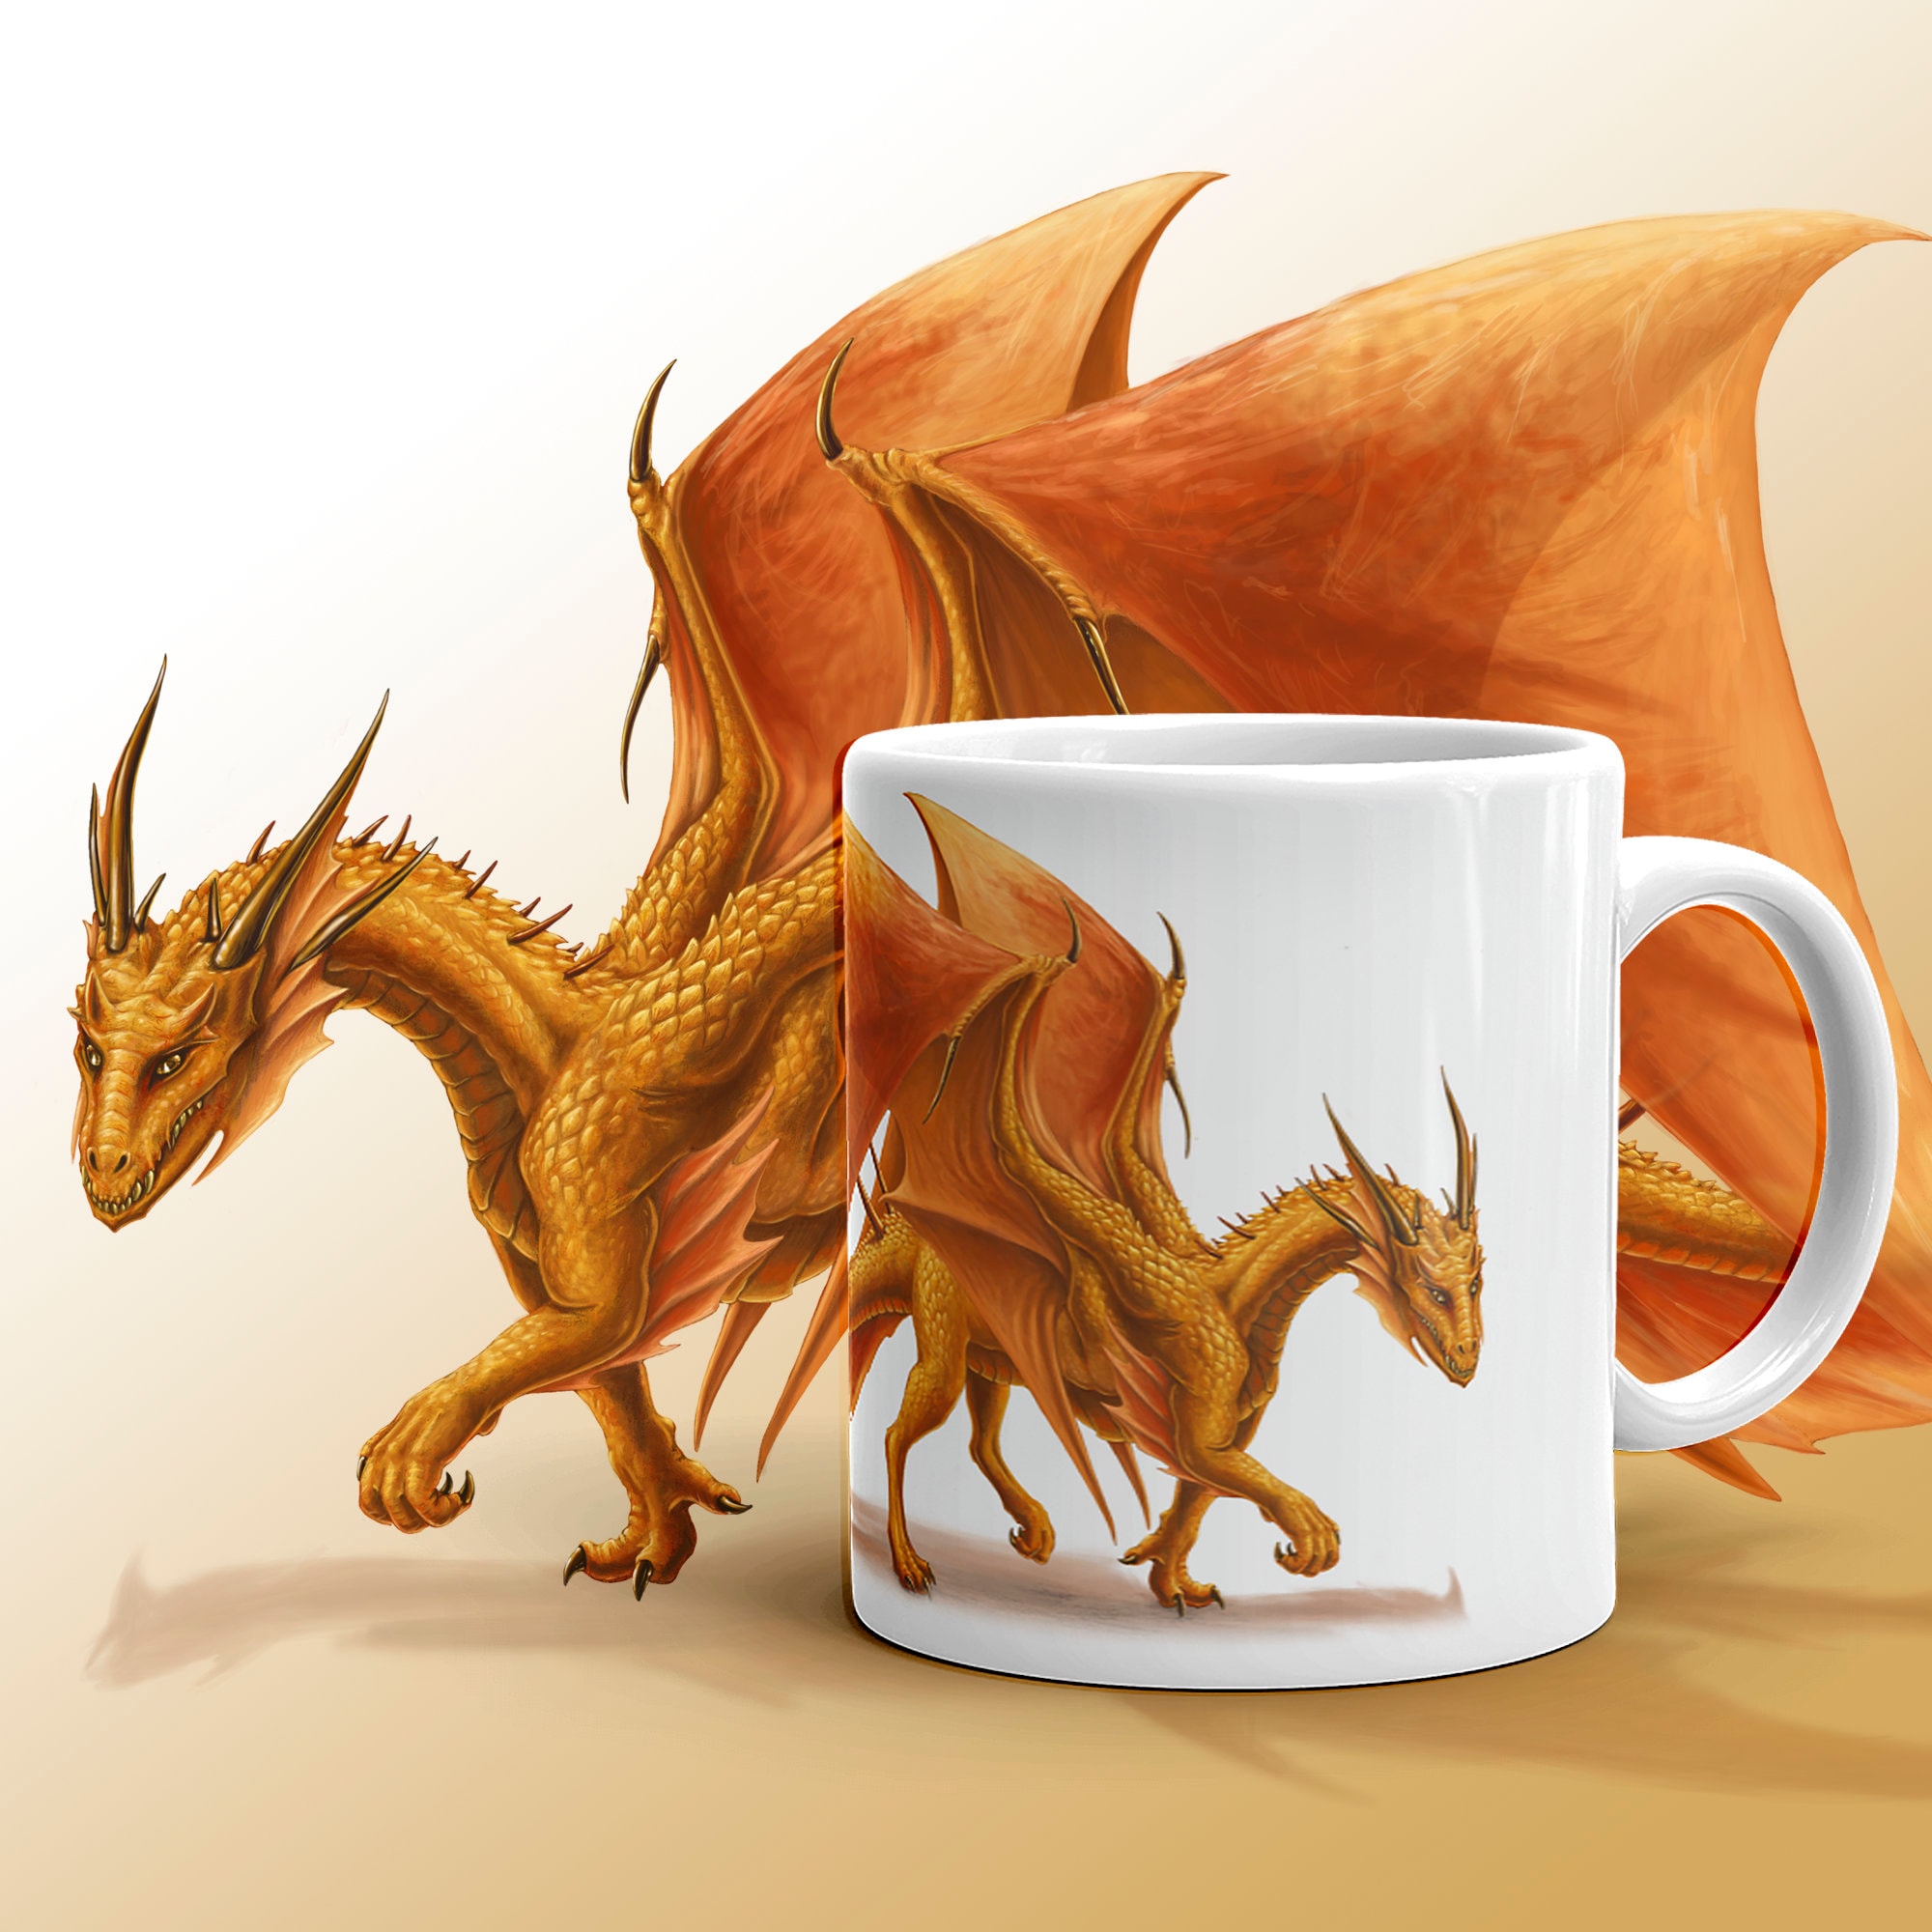 Дракон обед. Оранжевый дракон. Дракон и кофе. Чашка с драконом. Доброе утро дракончик.